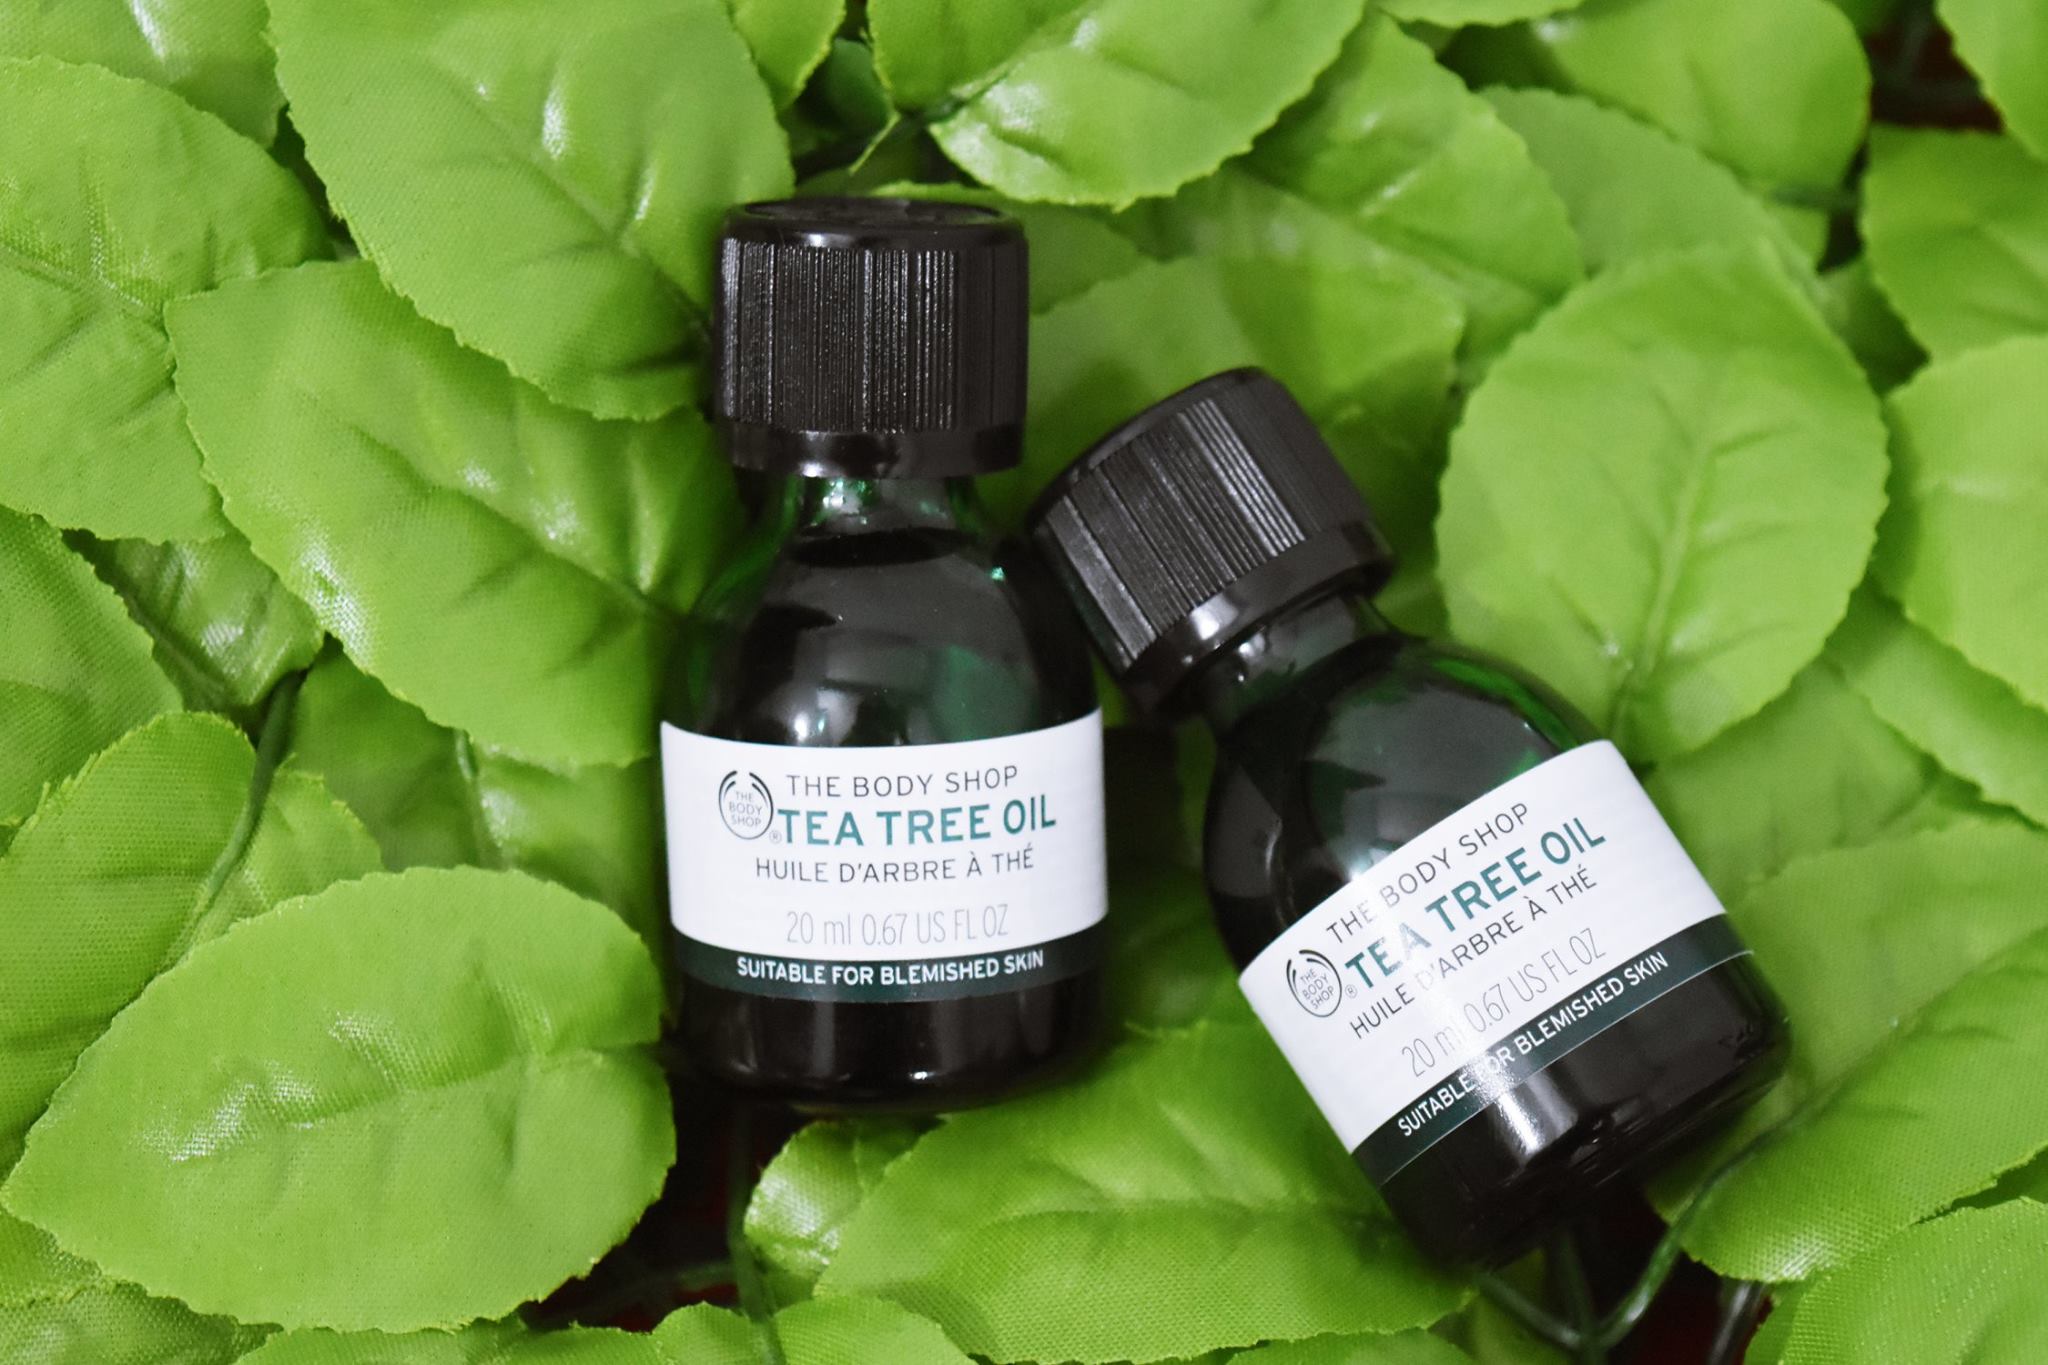 Review Tinh Dầu Trị Mụn Hiệu Quả The Body Shop Tea Tree Oil Bloganchoi